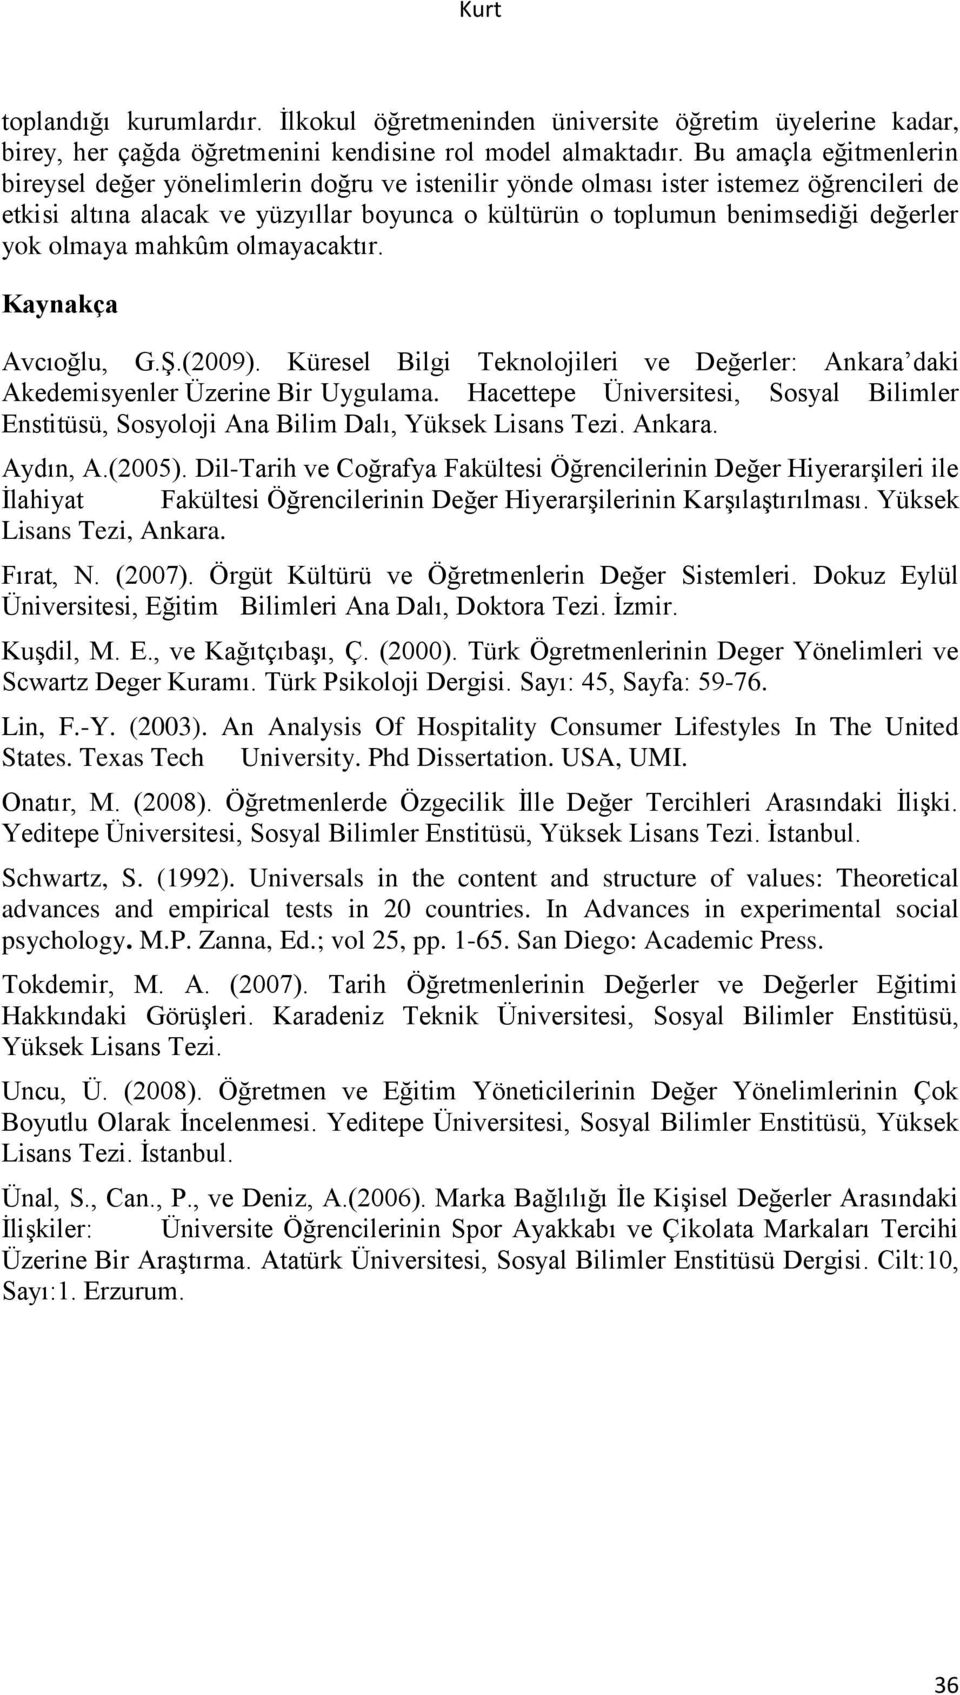 yok olmaya mahkûm olmayacaktır. Kaynakça Avcıoğlu, G.Ş.(2009). Küresel Bilgi Teknolojileri ve Değerler: Ankara daki Akedemisyenler Üzerine Bir Uygulama.